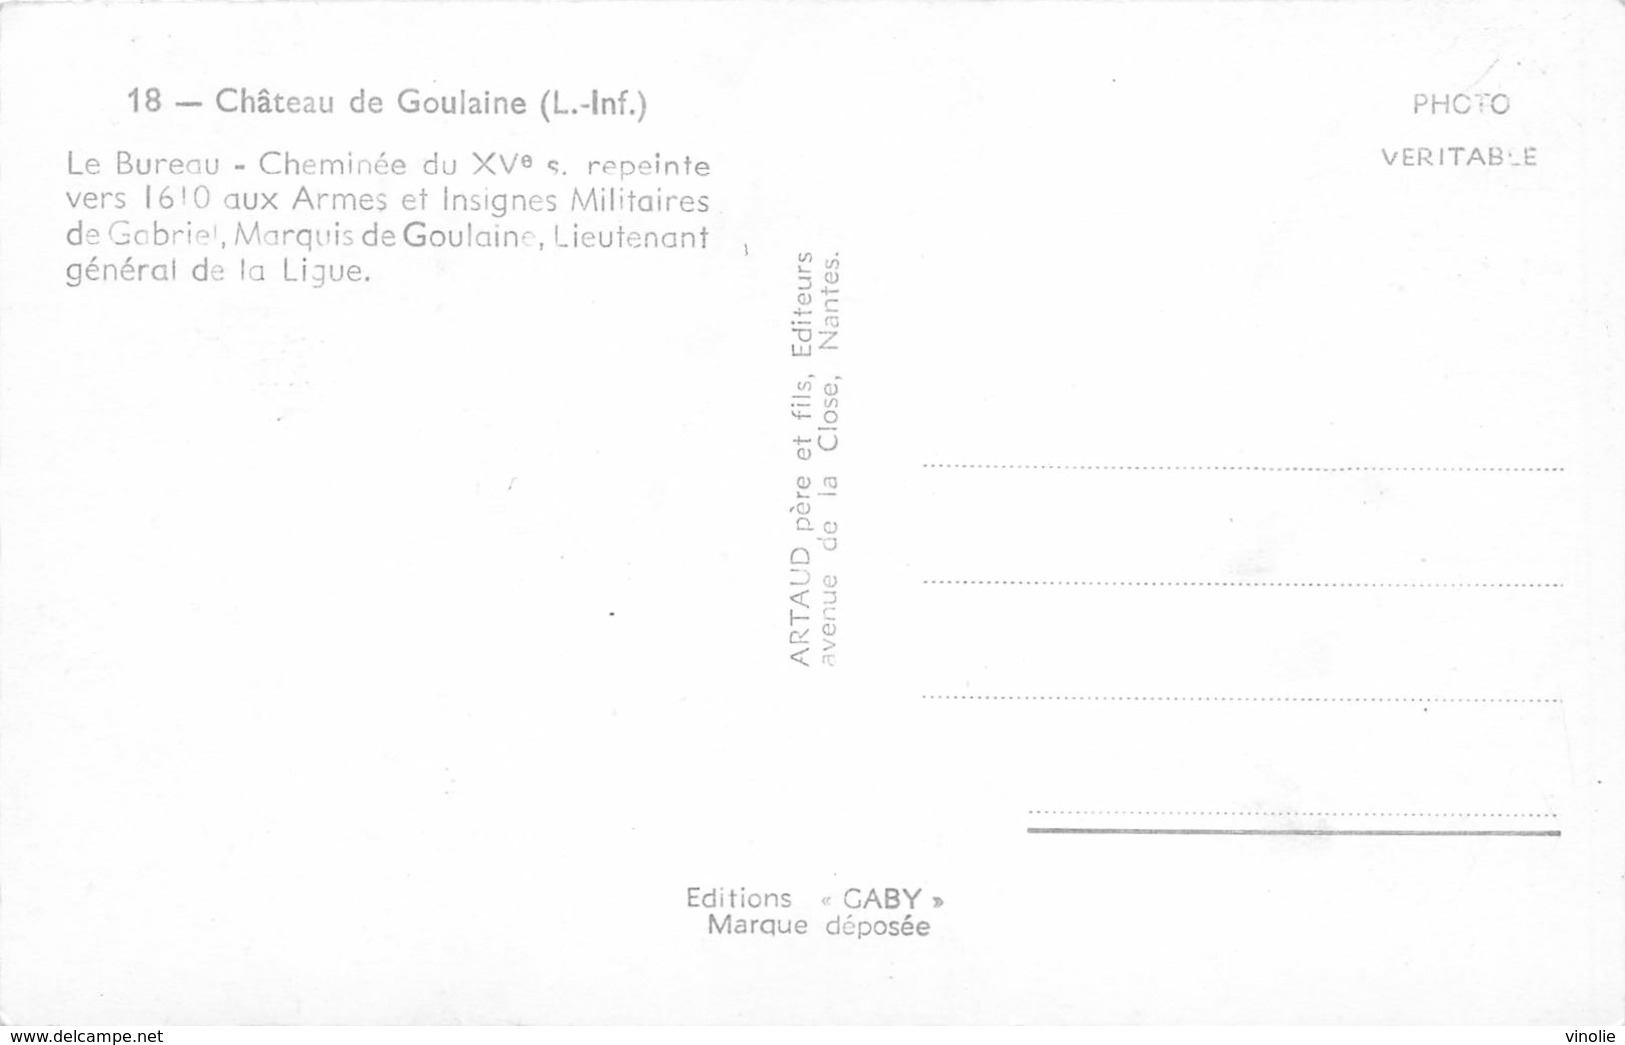 PIE-mpb-19-169 : CHATEAU DE GOULAINE. - Haute-Goulaine